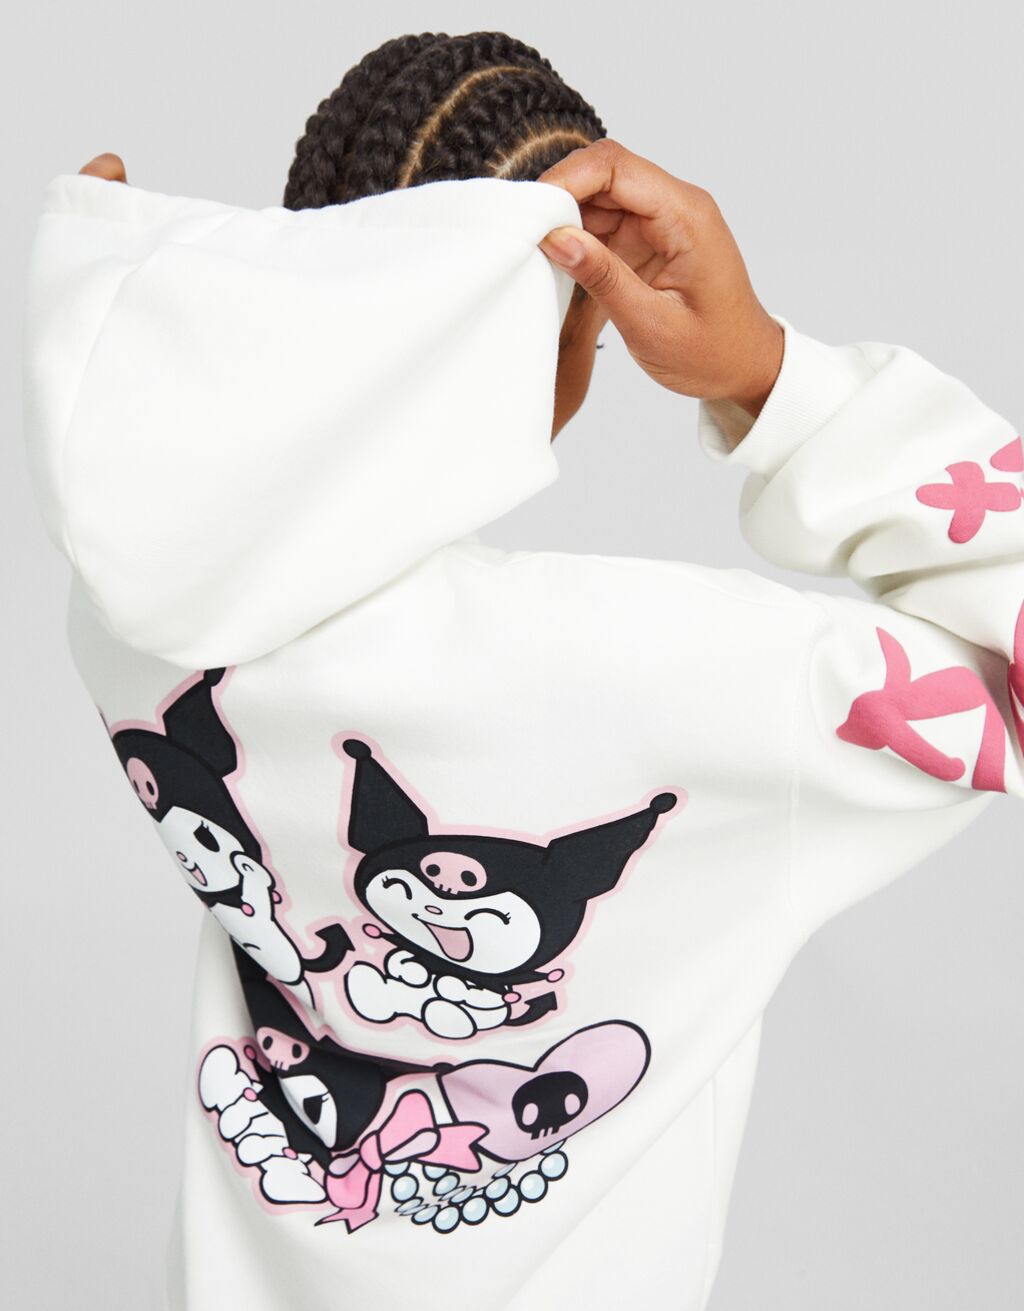 Kuromi print hoodie